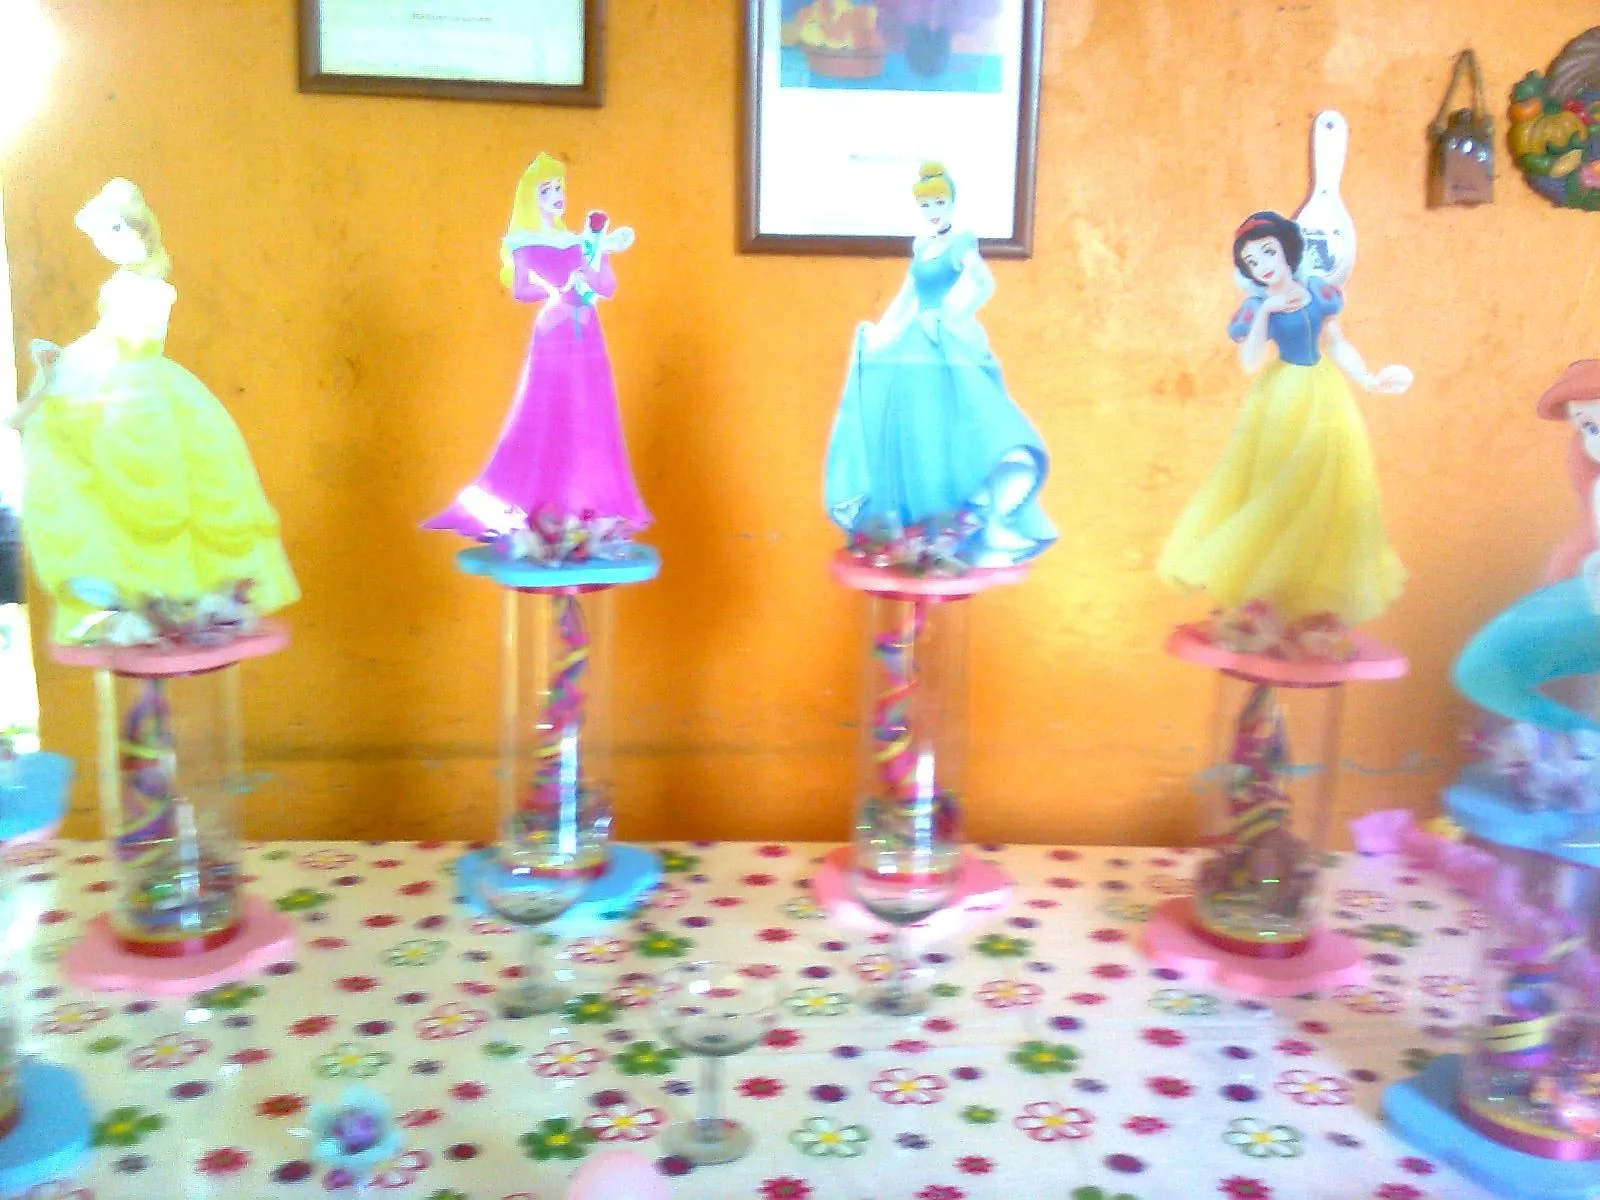 Party & Piñatas "Variedades Dana's": abril 2012